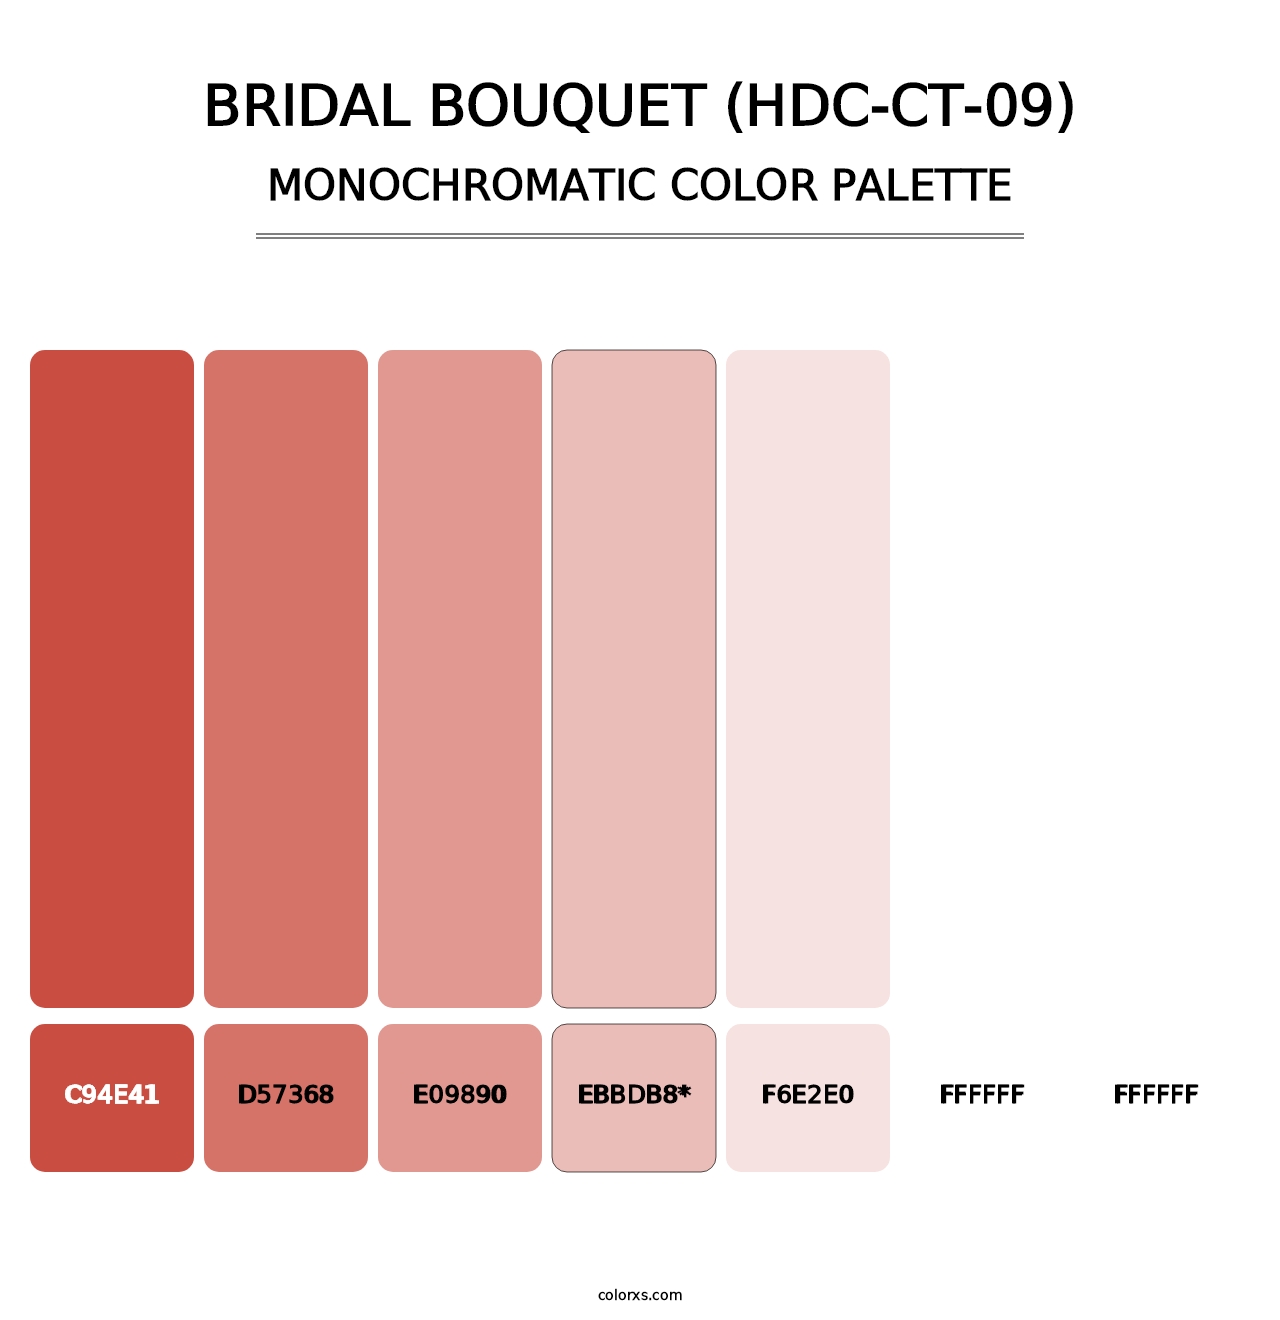 Bridal Bouquet (HDC-CT-09) - Monochromatic Color Palette